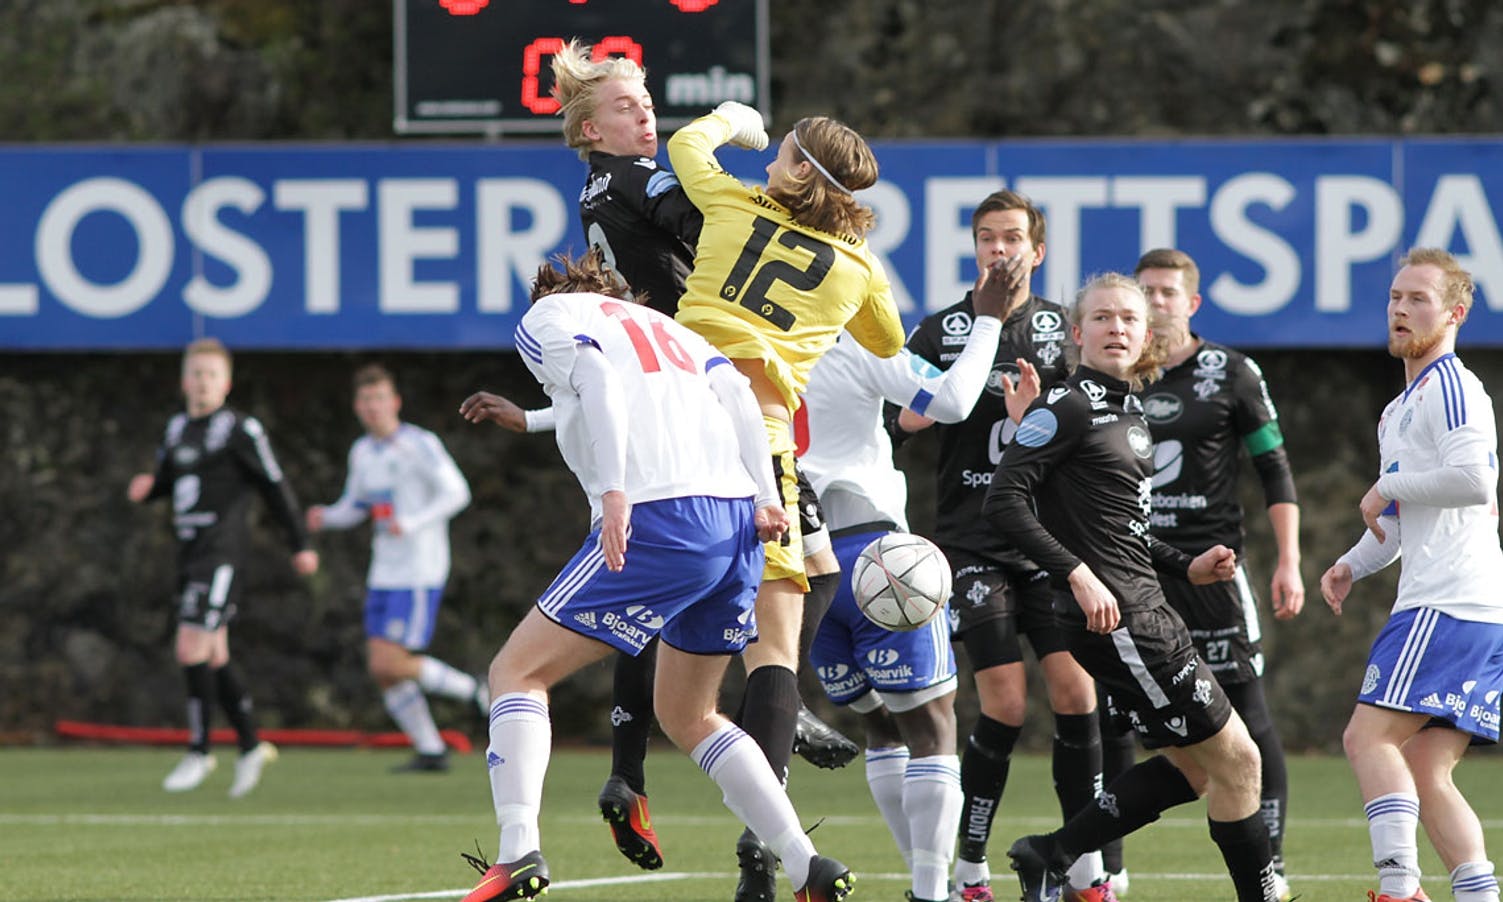 Midtstoppar Sivertsen sette inn 1-0 på corner i 9. minutt. (Foto: KVB)